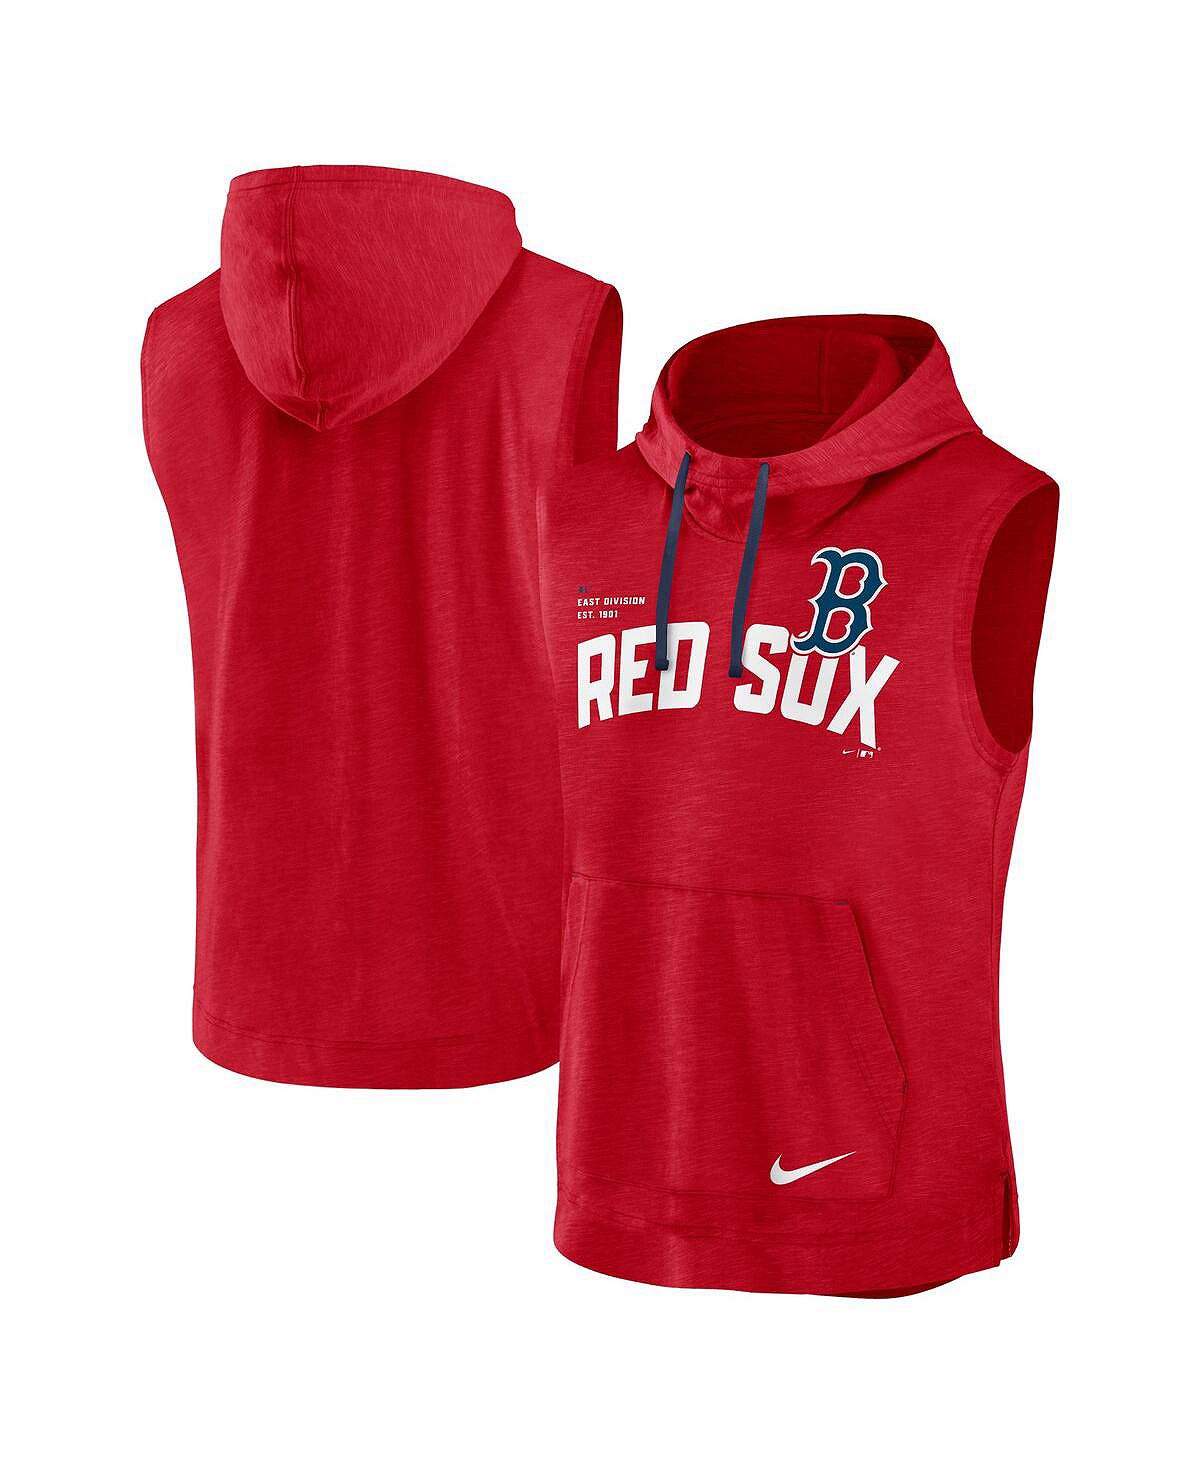 

Мужская красная футболка без рукавов с капюшоном Boston Red Sox Athletic Nike, Красный